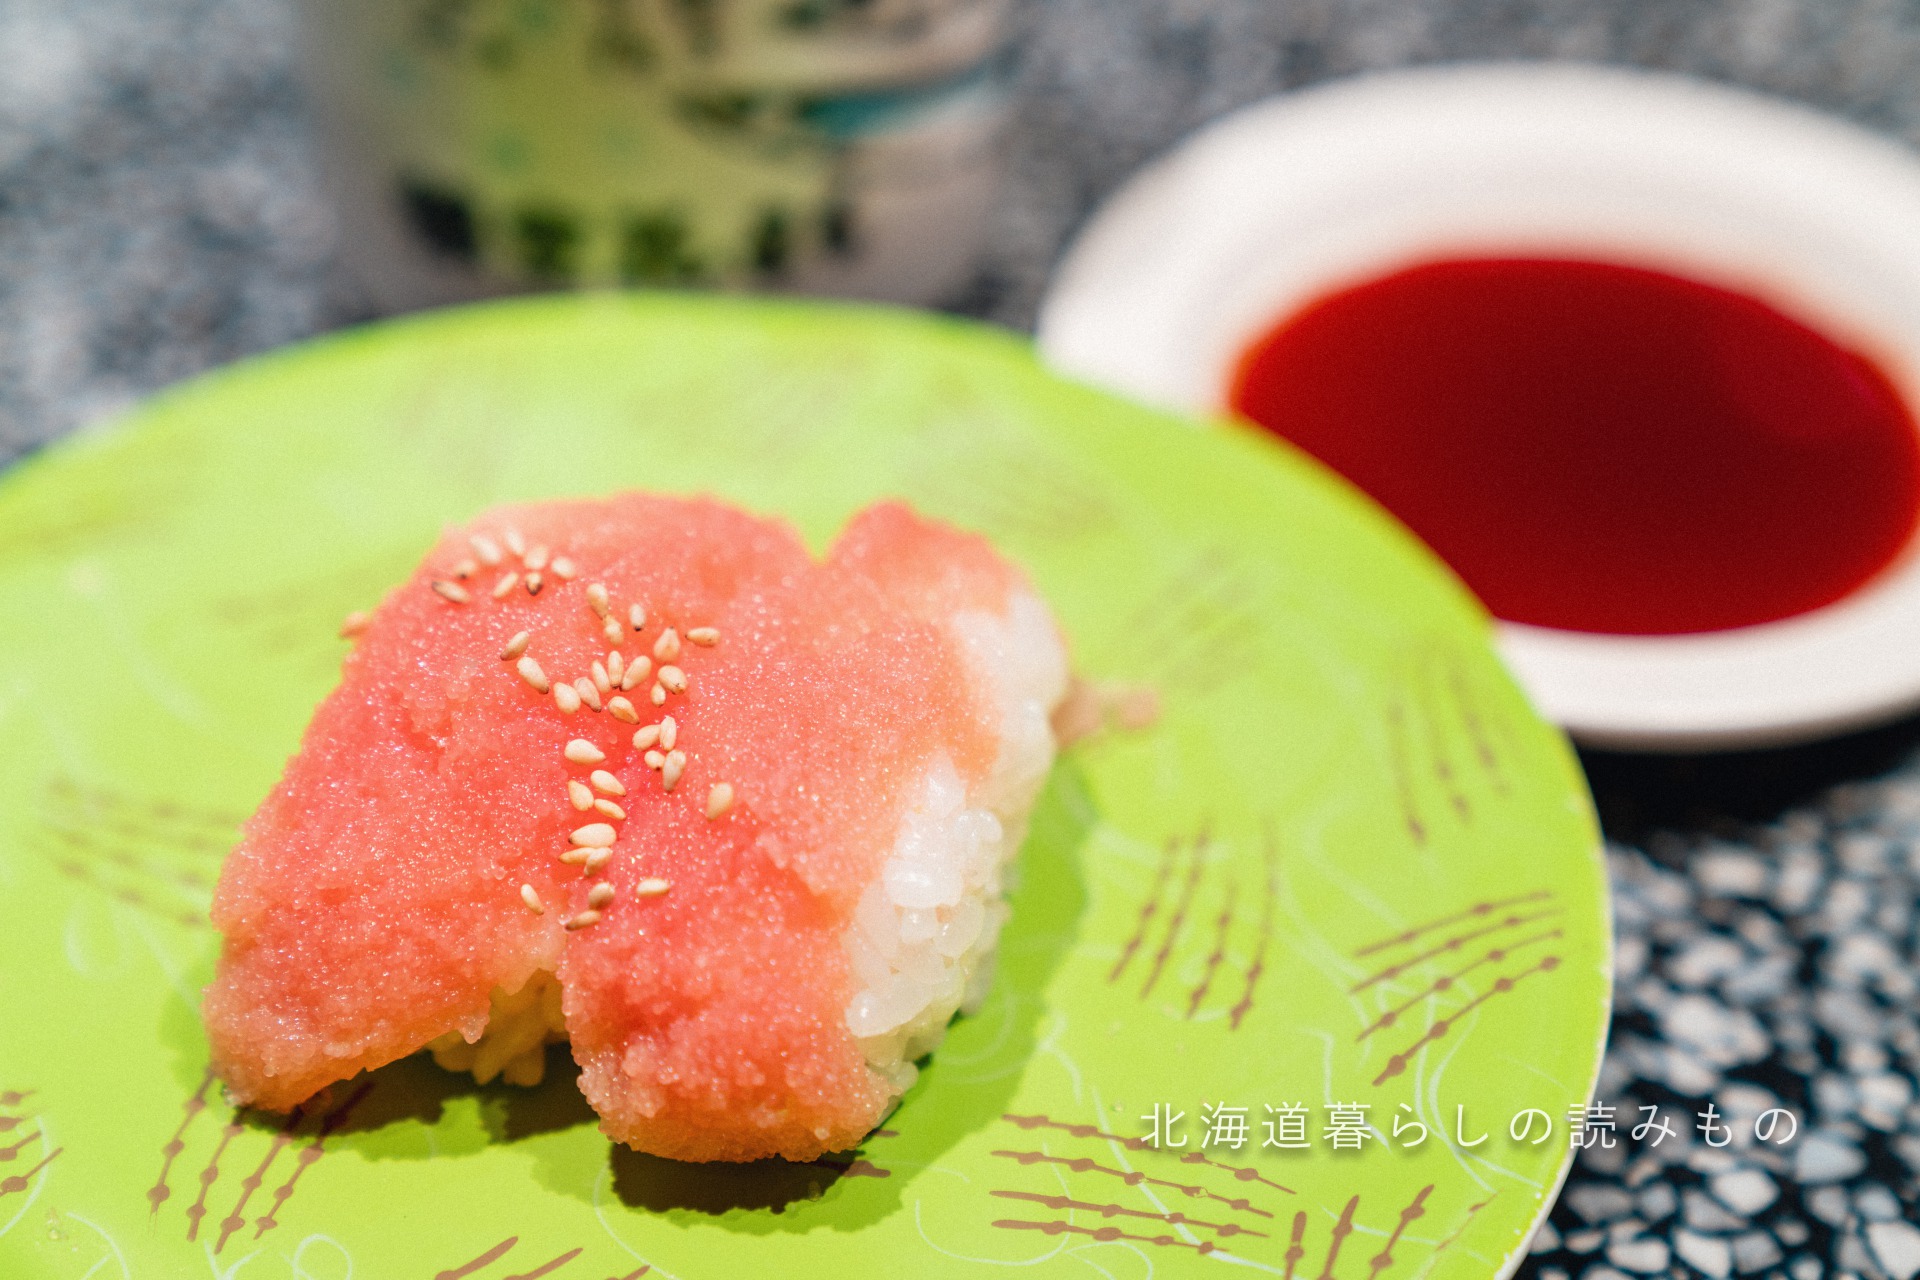 回転寿司 根室花まるのメニュー「味わいたらこ握り」の写真